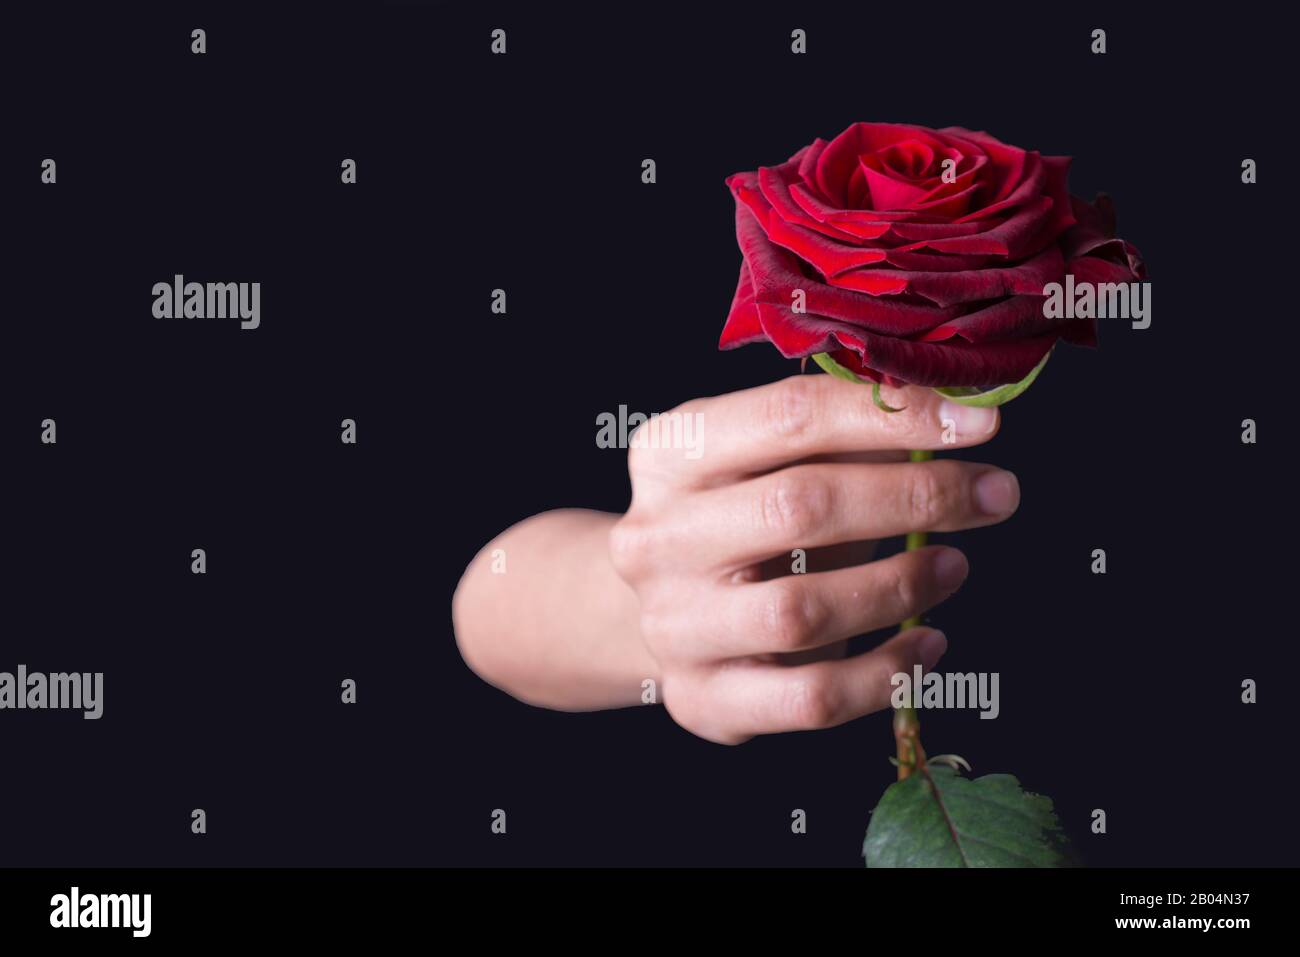 Une belle rose rouge avec les mains de la femme main de la femme tient une  fleur de rose rouge, sur un fond noir. Vacances le jour de la  Saint-Valentin. Saint Valentin